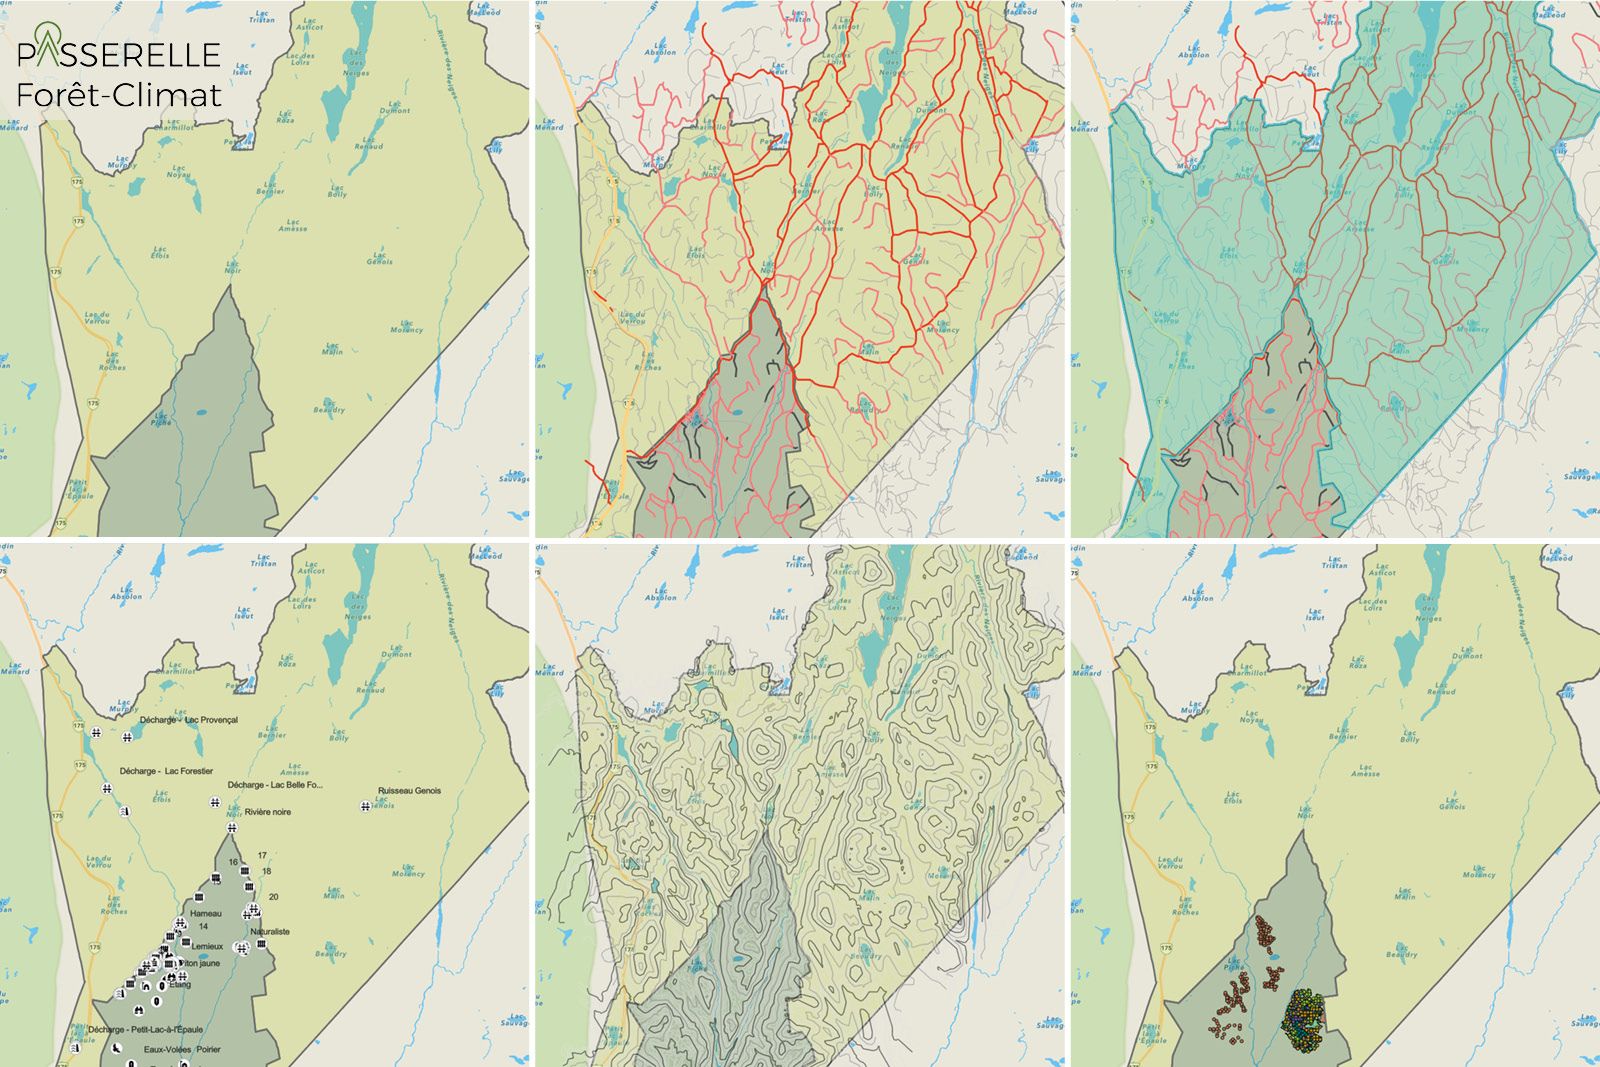 Image présentant 6 cartes d'un même lieu avec des filtres différents.